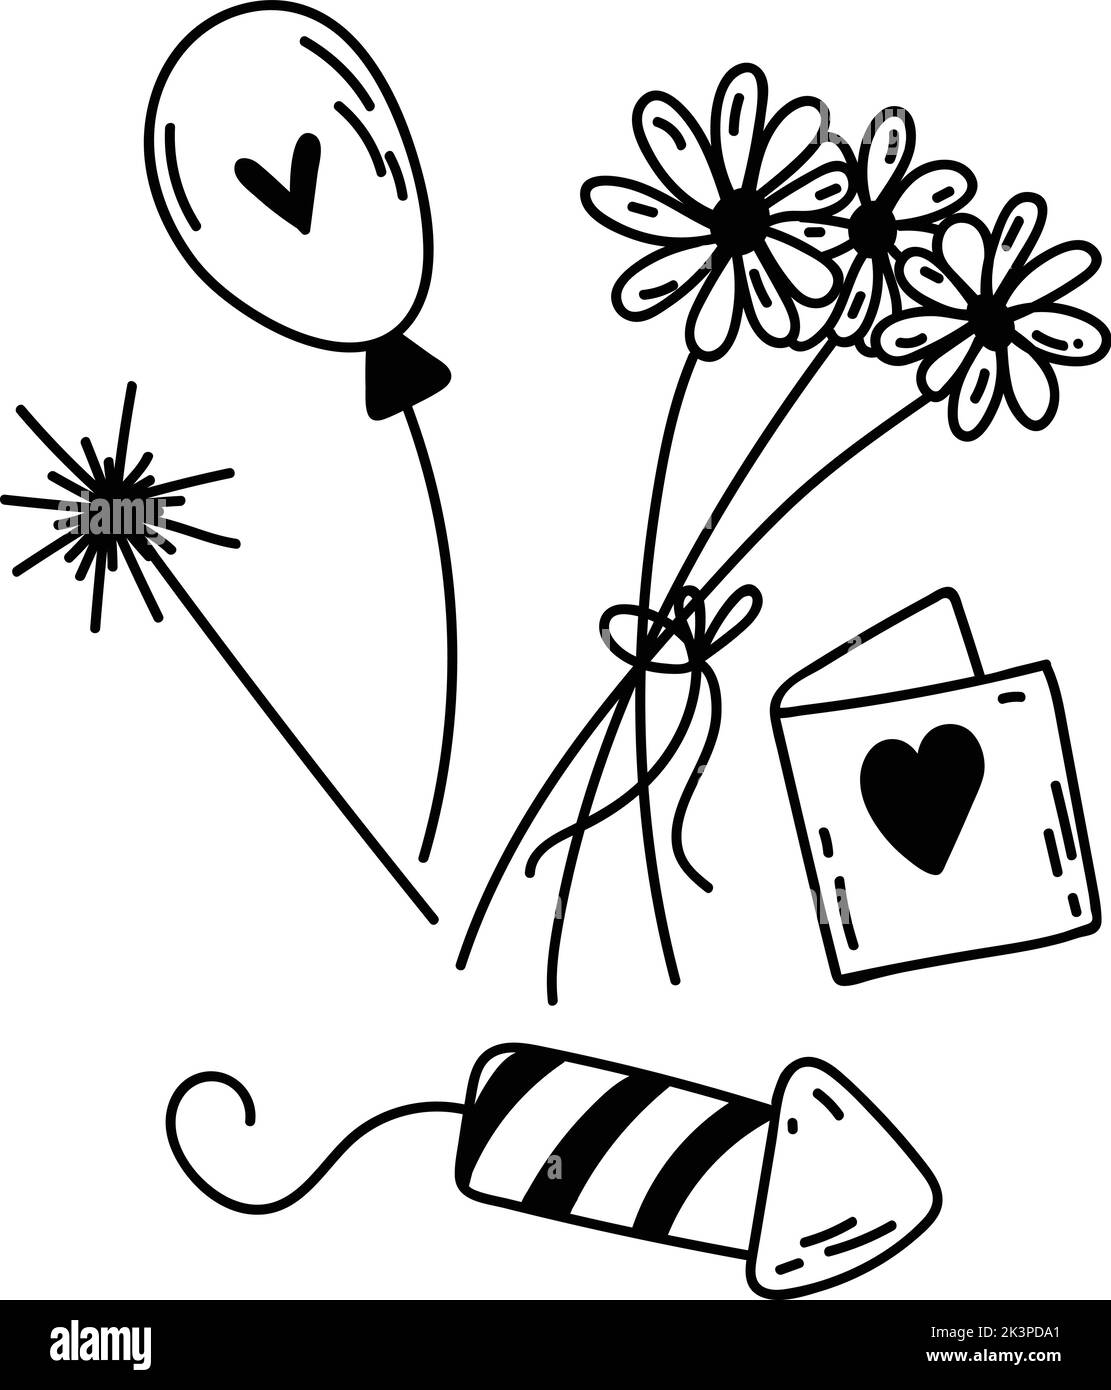 Satz von Doodle Party-Elementen. Handgezeichnete Vektorgrafik mit Daisen, Ballon, Geschenkkarte, Wunderkerzen für Dekor, Logo, Textil- und Webdesign, Karte Stock Vektor